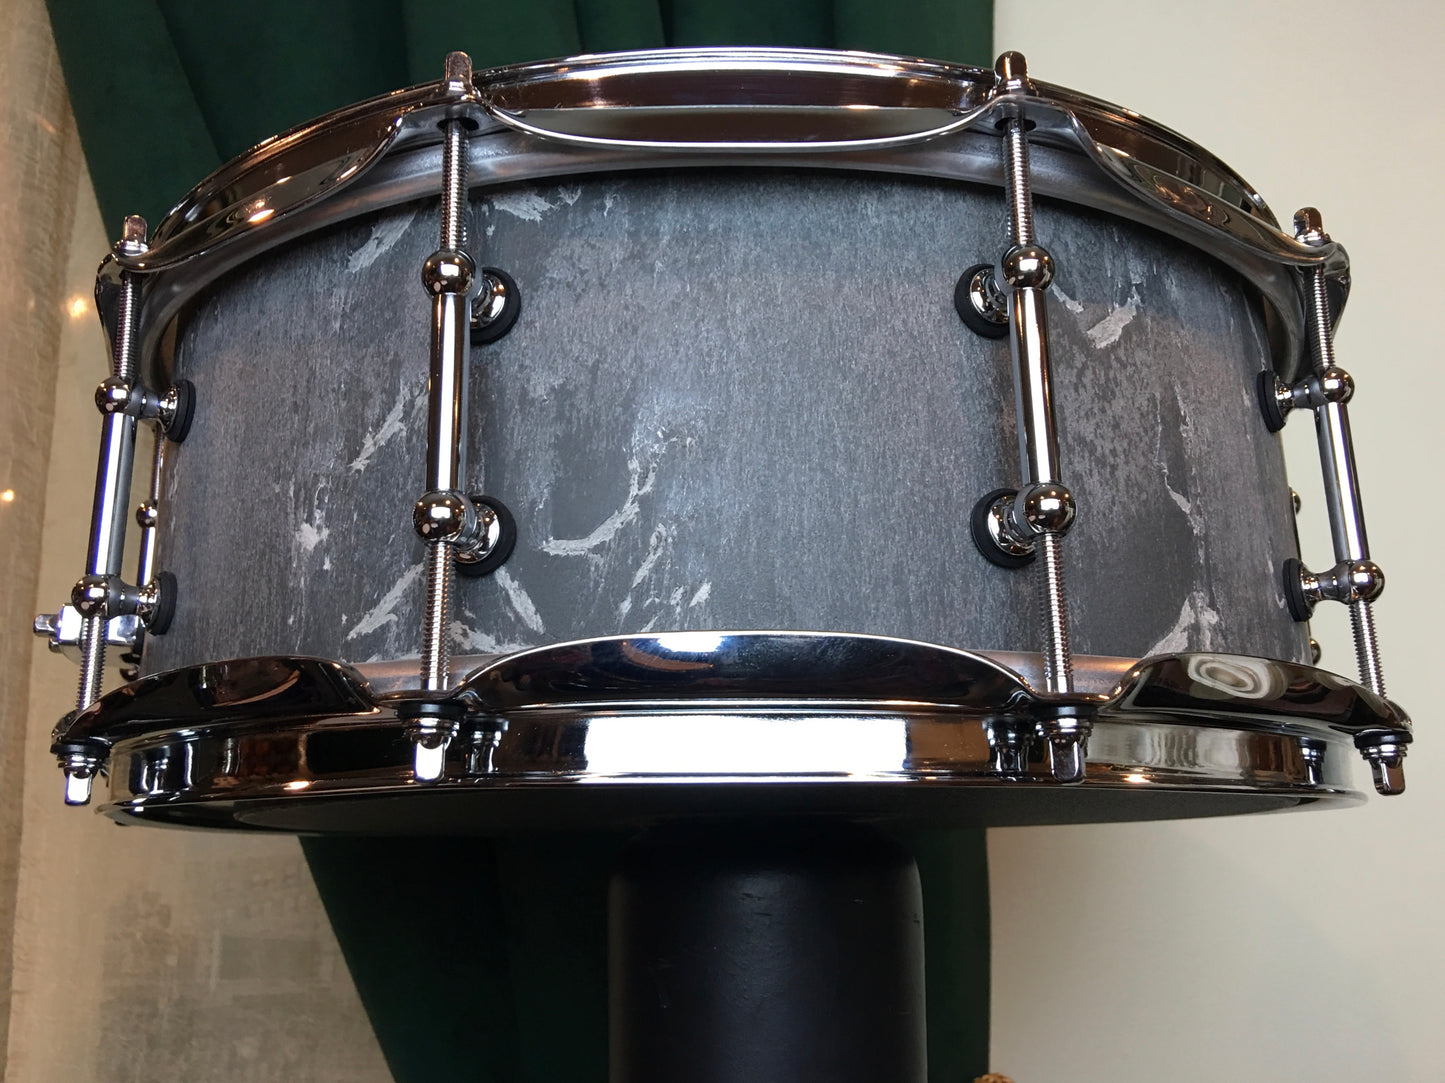 Kumu 5.5"x14" StonEdge Pro 2 Snare Drum from Finland